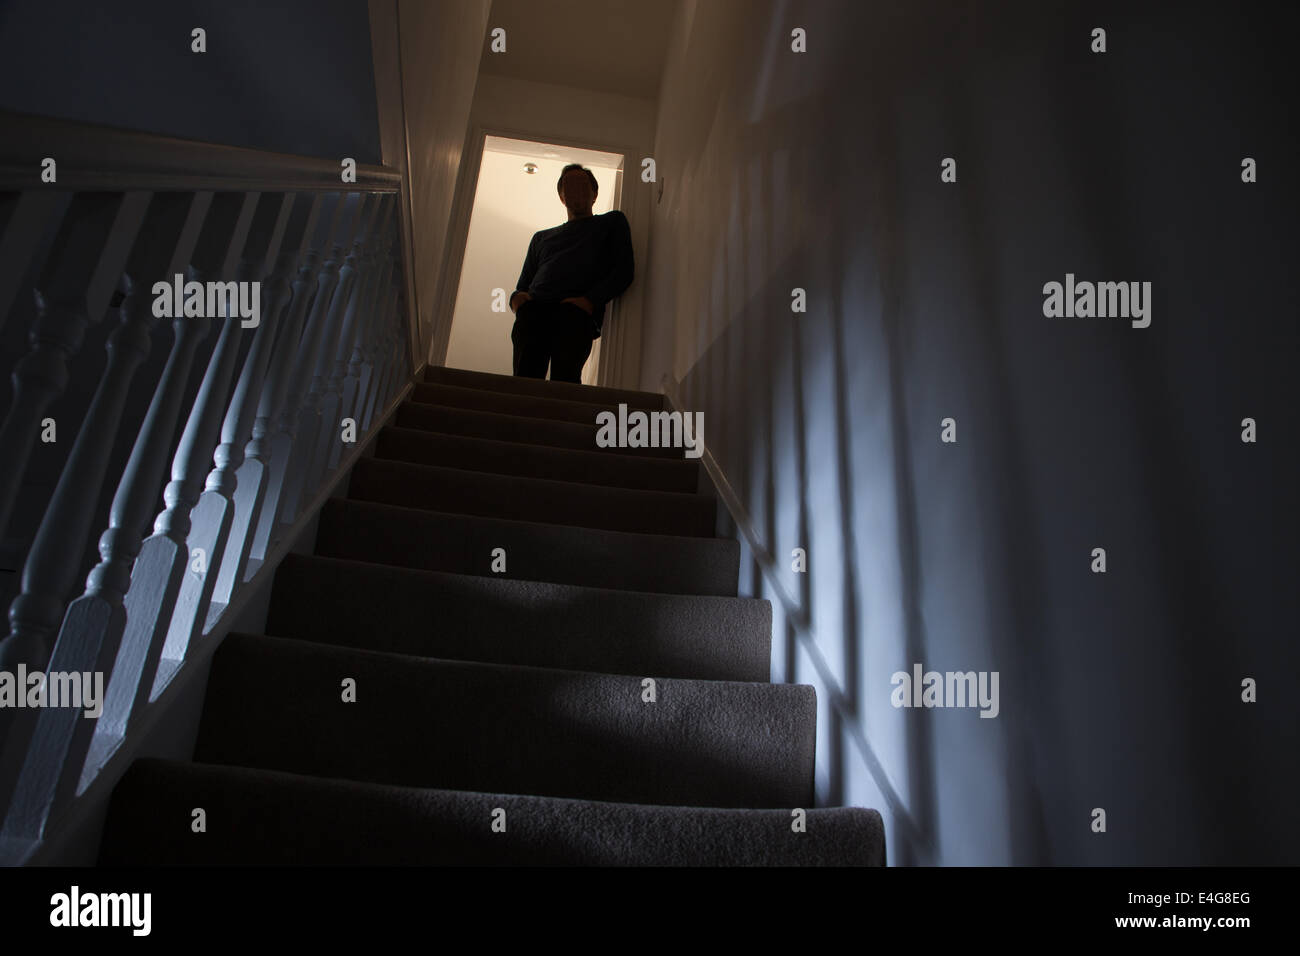 Silhouette d'un homme appuyé contre le mur en haut de l'escalier, des ombres projetées sur les murs de la lumière ci-dessous. Banque D'Images